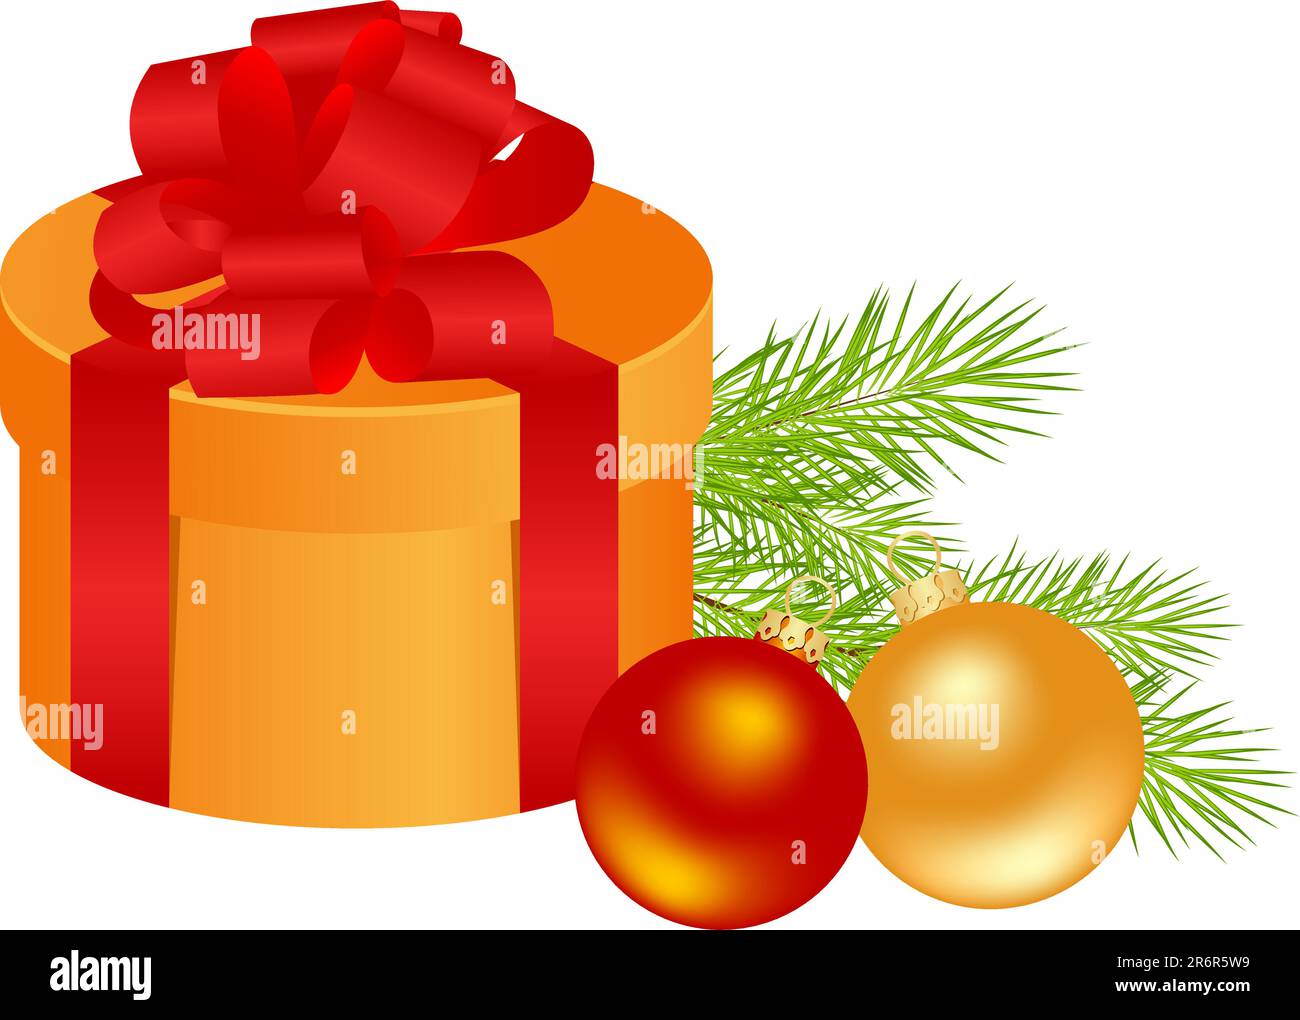 Weihnachtsgeschenkbox mit goldenen und roten Kugeln. Vektordarstellung. Stock Vektor